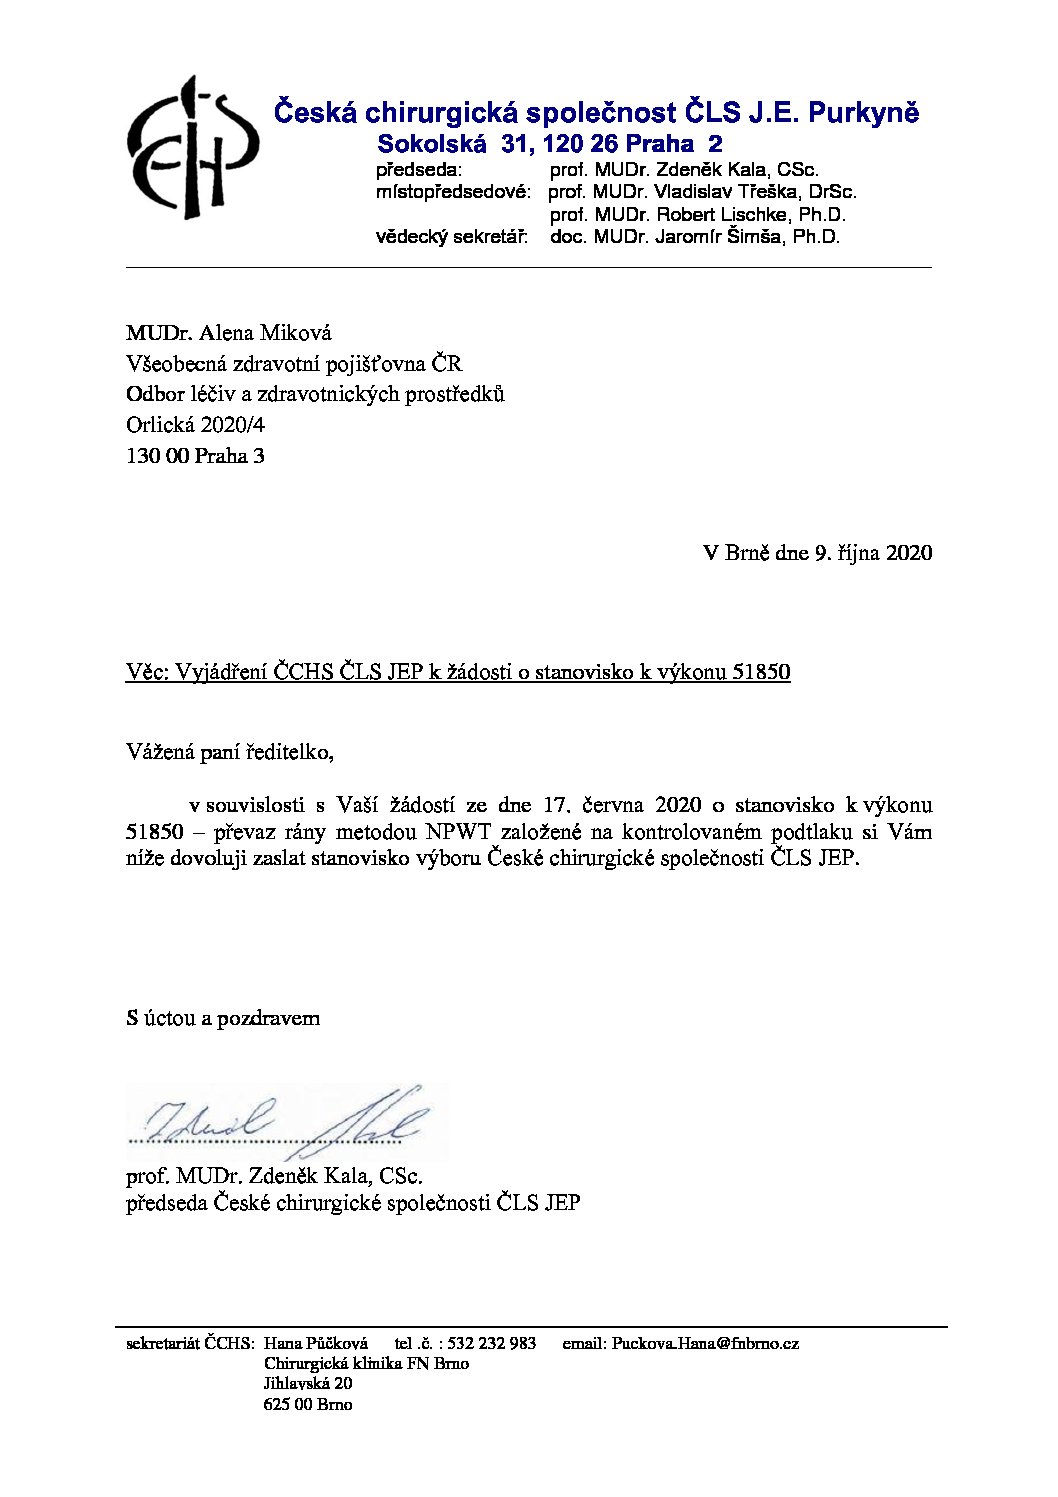 Stanovisko výboru ČCHS ČLS JEP k žádosti VZP stran výkonu 51850 (9. 10. 2020)